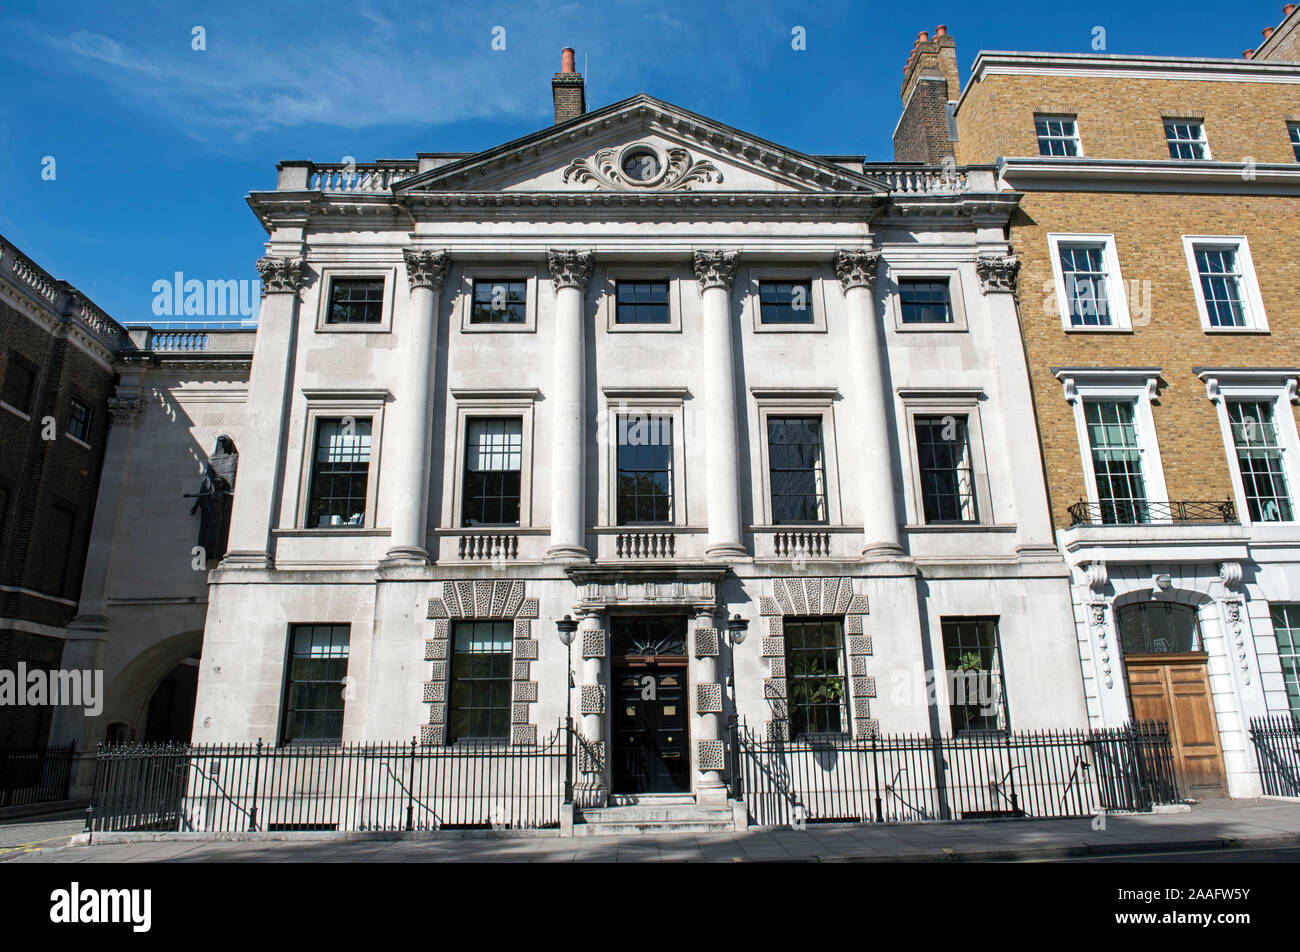 Maison de ville géorgienne Cavandish Square de Marylebone, Westminster London W1 Banque D'Images